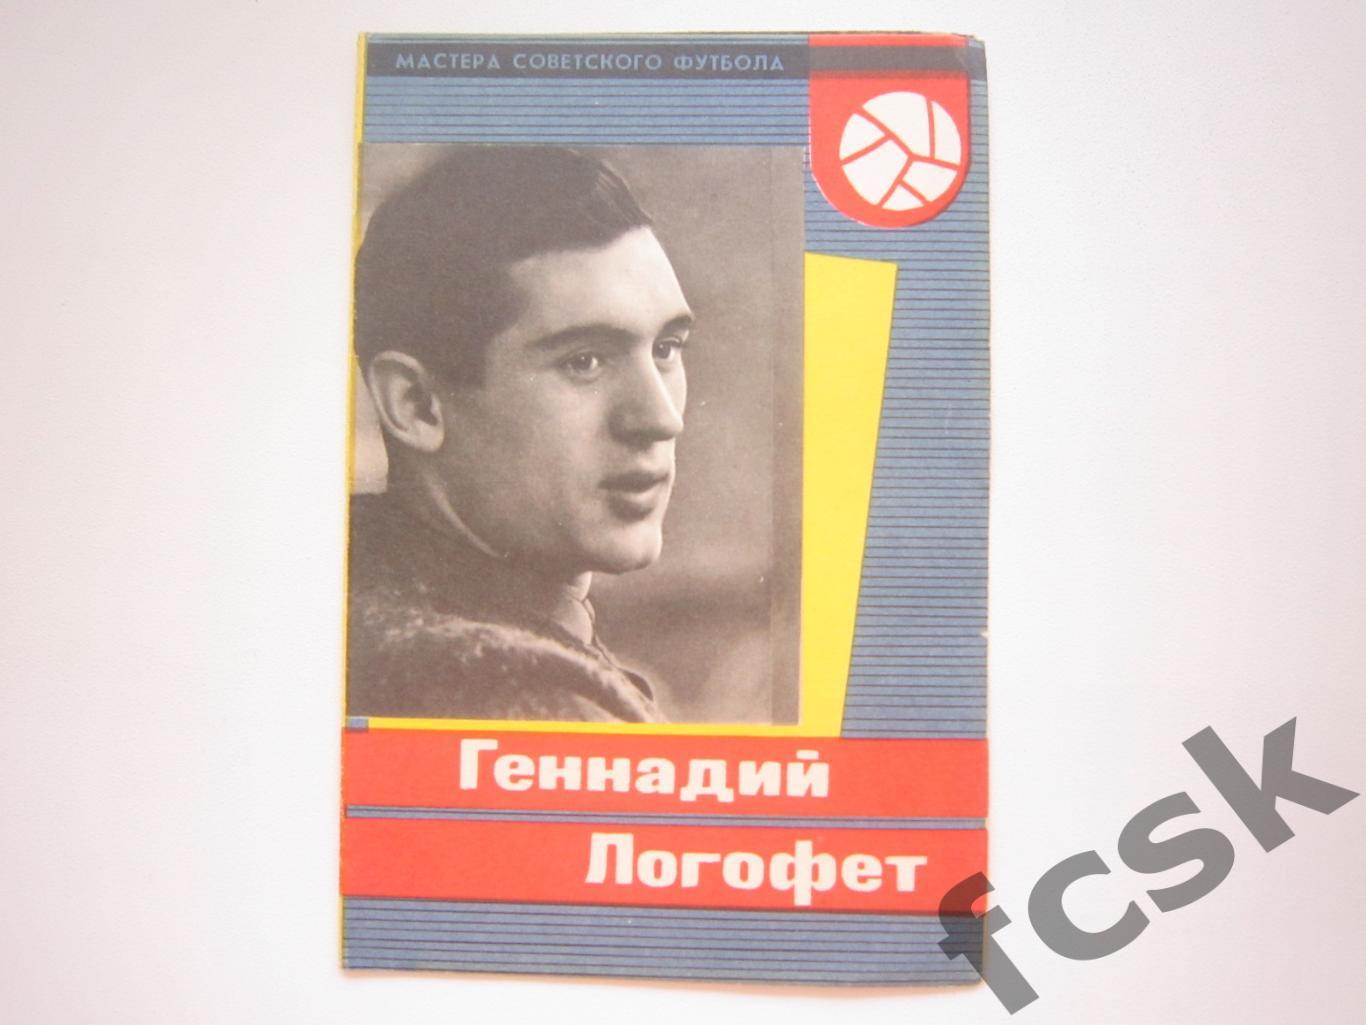 Геннадий Логофет (Спартак Москва) Мастера советского футбола 1965